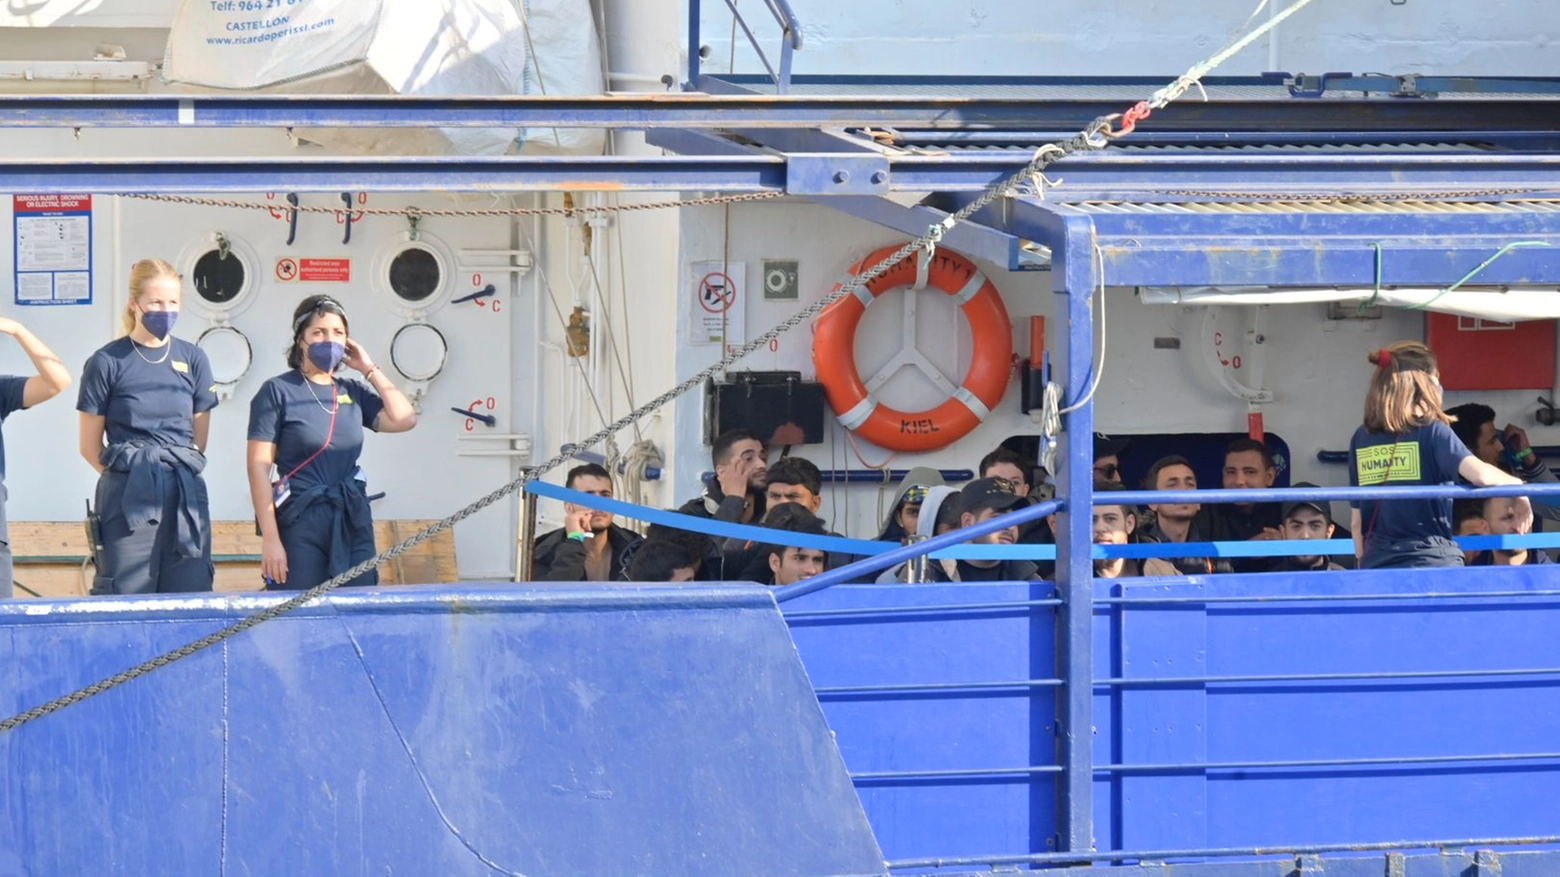 <p>Migranti, la “Sos Humanity” in porto a Livorno: sulla nave anche 9 ragazzi / <a href="https://www.iltelegrafolivorno.it/cronaca/migranti-la-nave-di-emergency-ha-attraccato-a-livorno-35-profughi-a-bordo-video-e-foto-ah5g05s3"><strong>L'ultimo arrivo il 3 maggio scorso</strong></a></p>